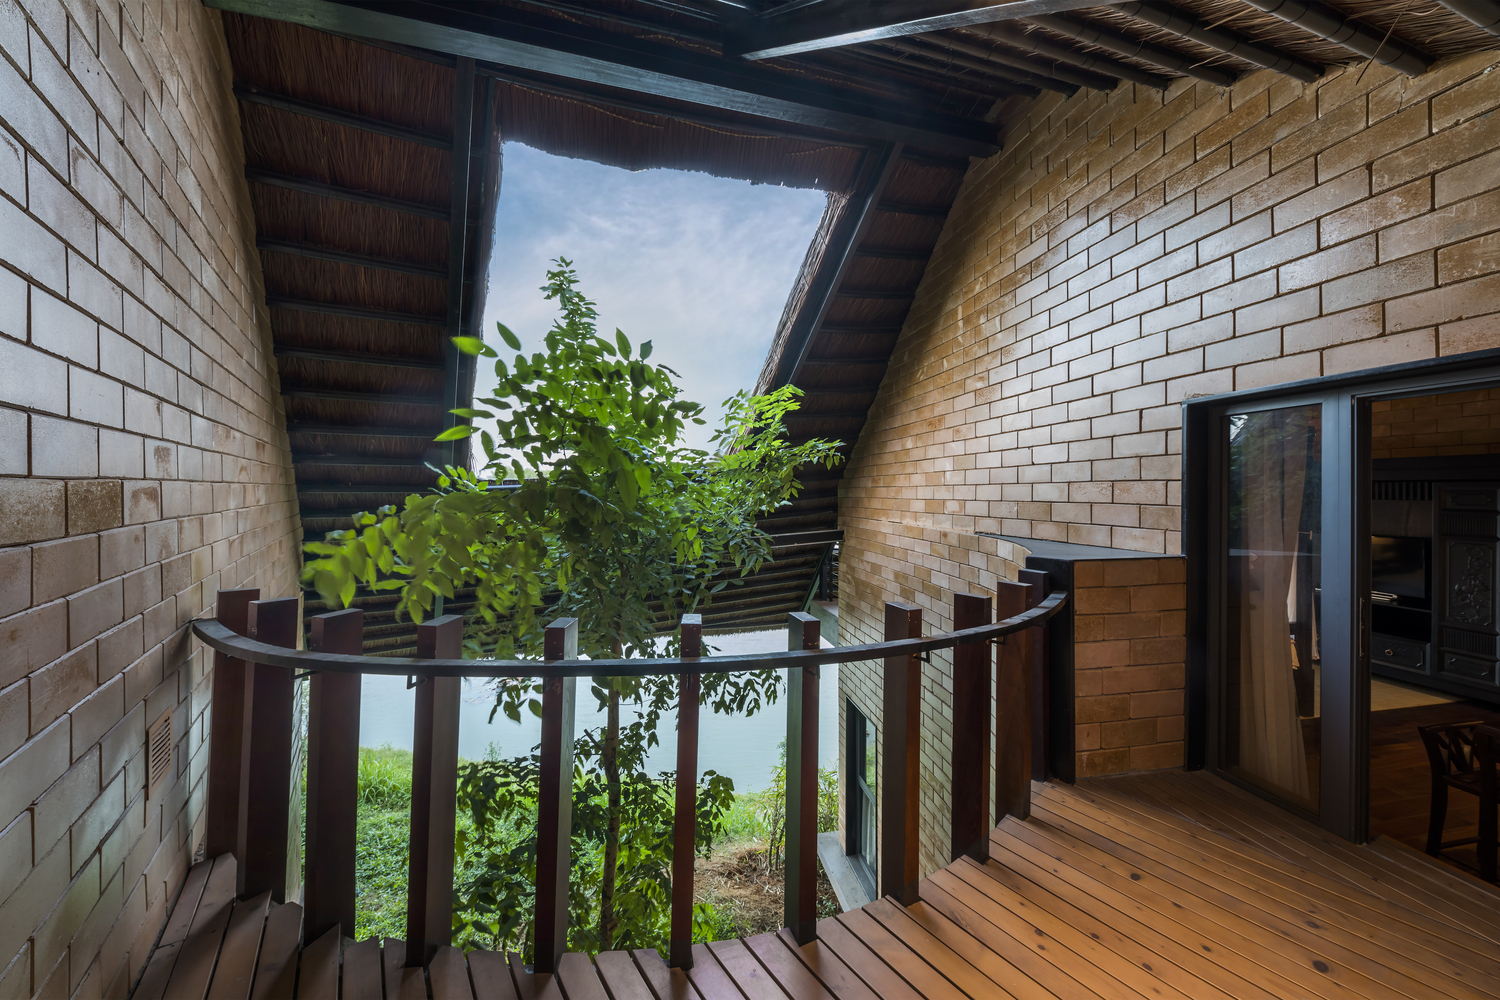 Ngôi nhà view nhìn ra hồ nước tuyệt đẹp, kiến trúc gợi hình ảnh làng quê Việt tại ngoại thành Hà Nội - Ảnh 13